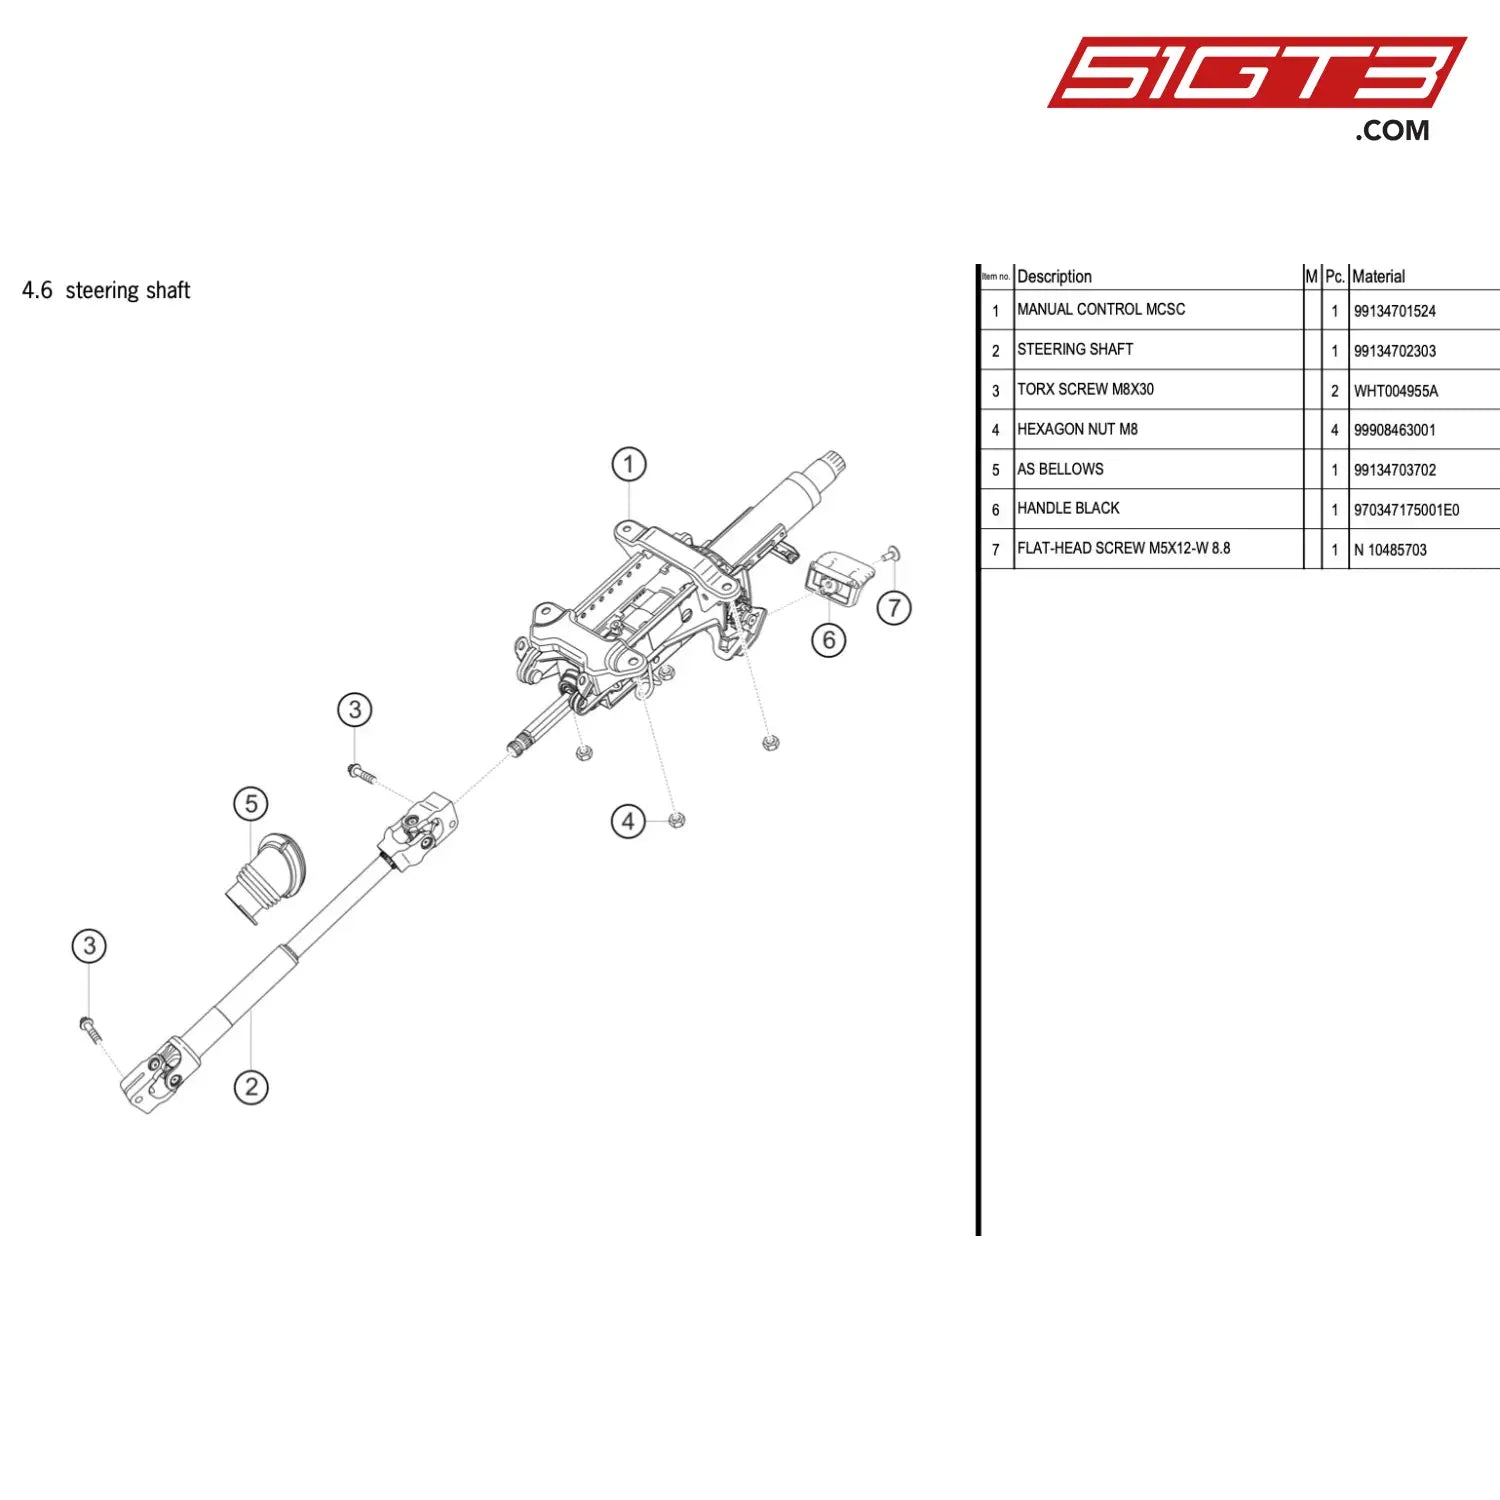 Torx Screw M8X30 - Wht004955A [Porsche 718 Cayman Gt4 Rs Clubsport] Steering Shaft